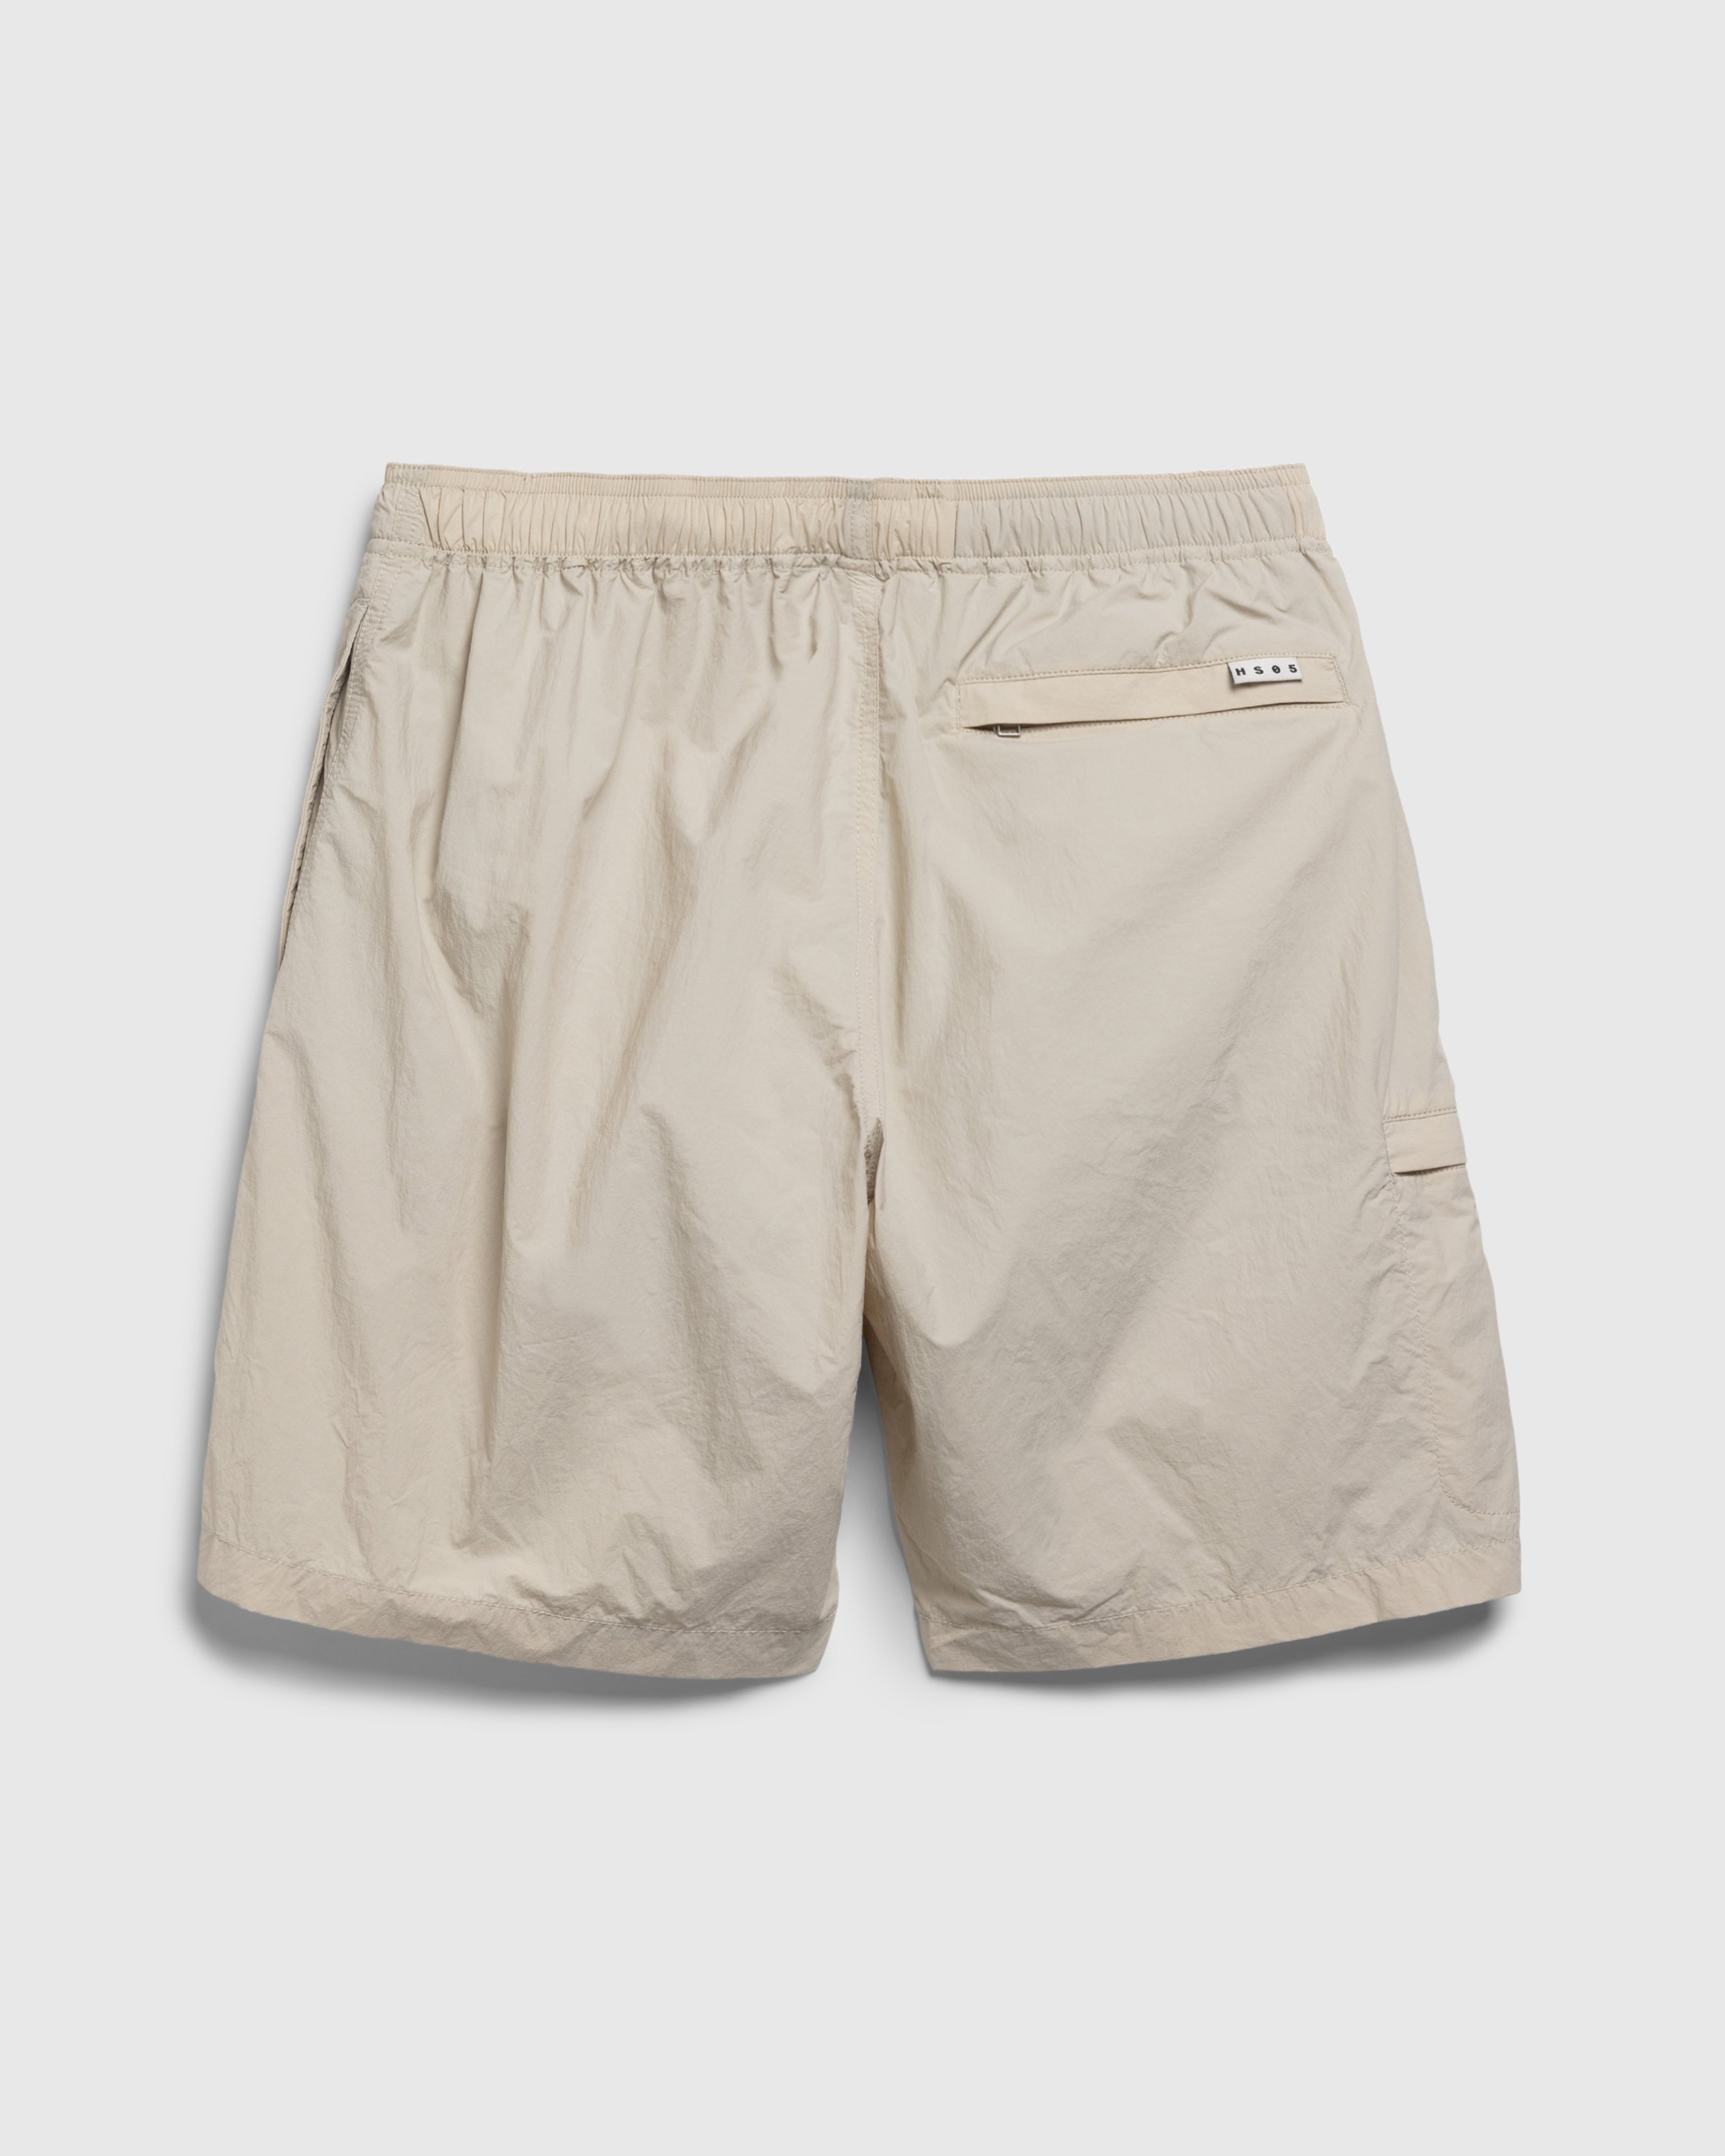 Highsnobiety HS05 - Natural Dyed Nylon Shorts Beige - Clothing - Beige - Image 2